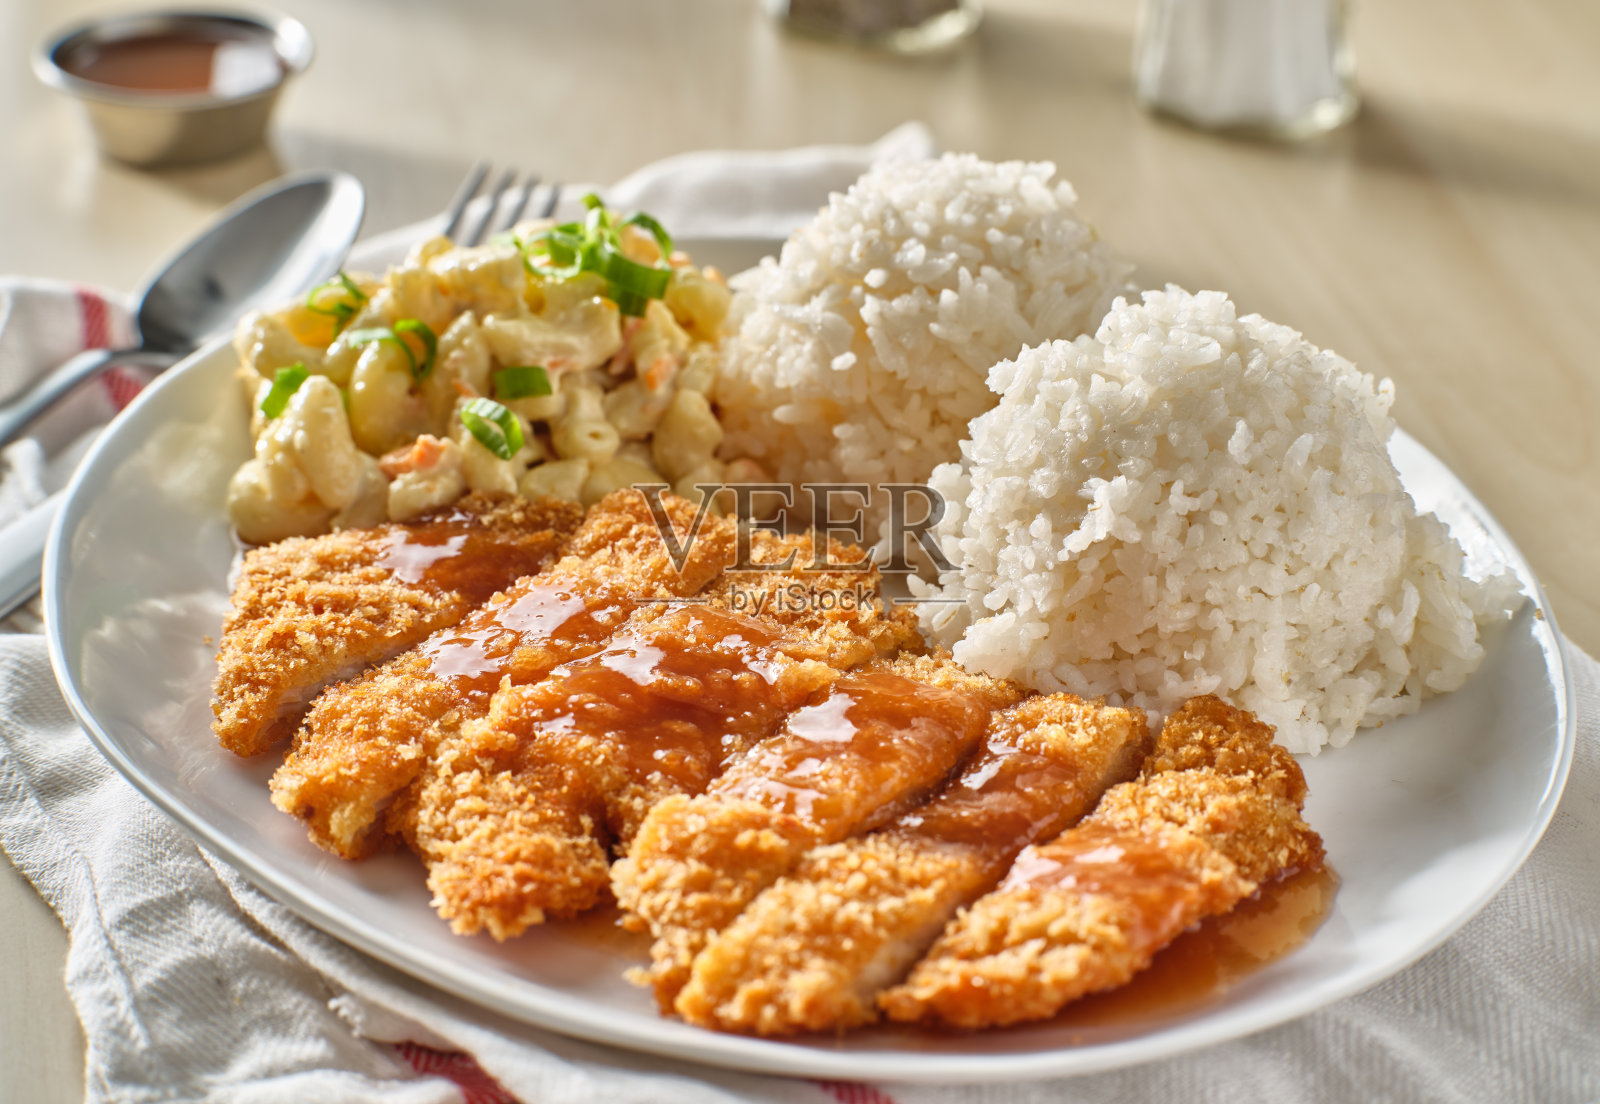 夏威夷烤鸡片配肉汁和米饭照片摄影图片